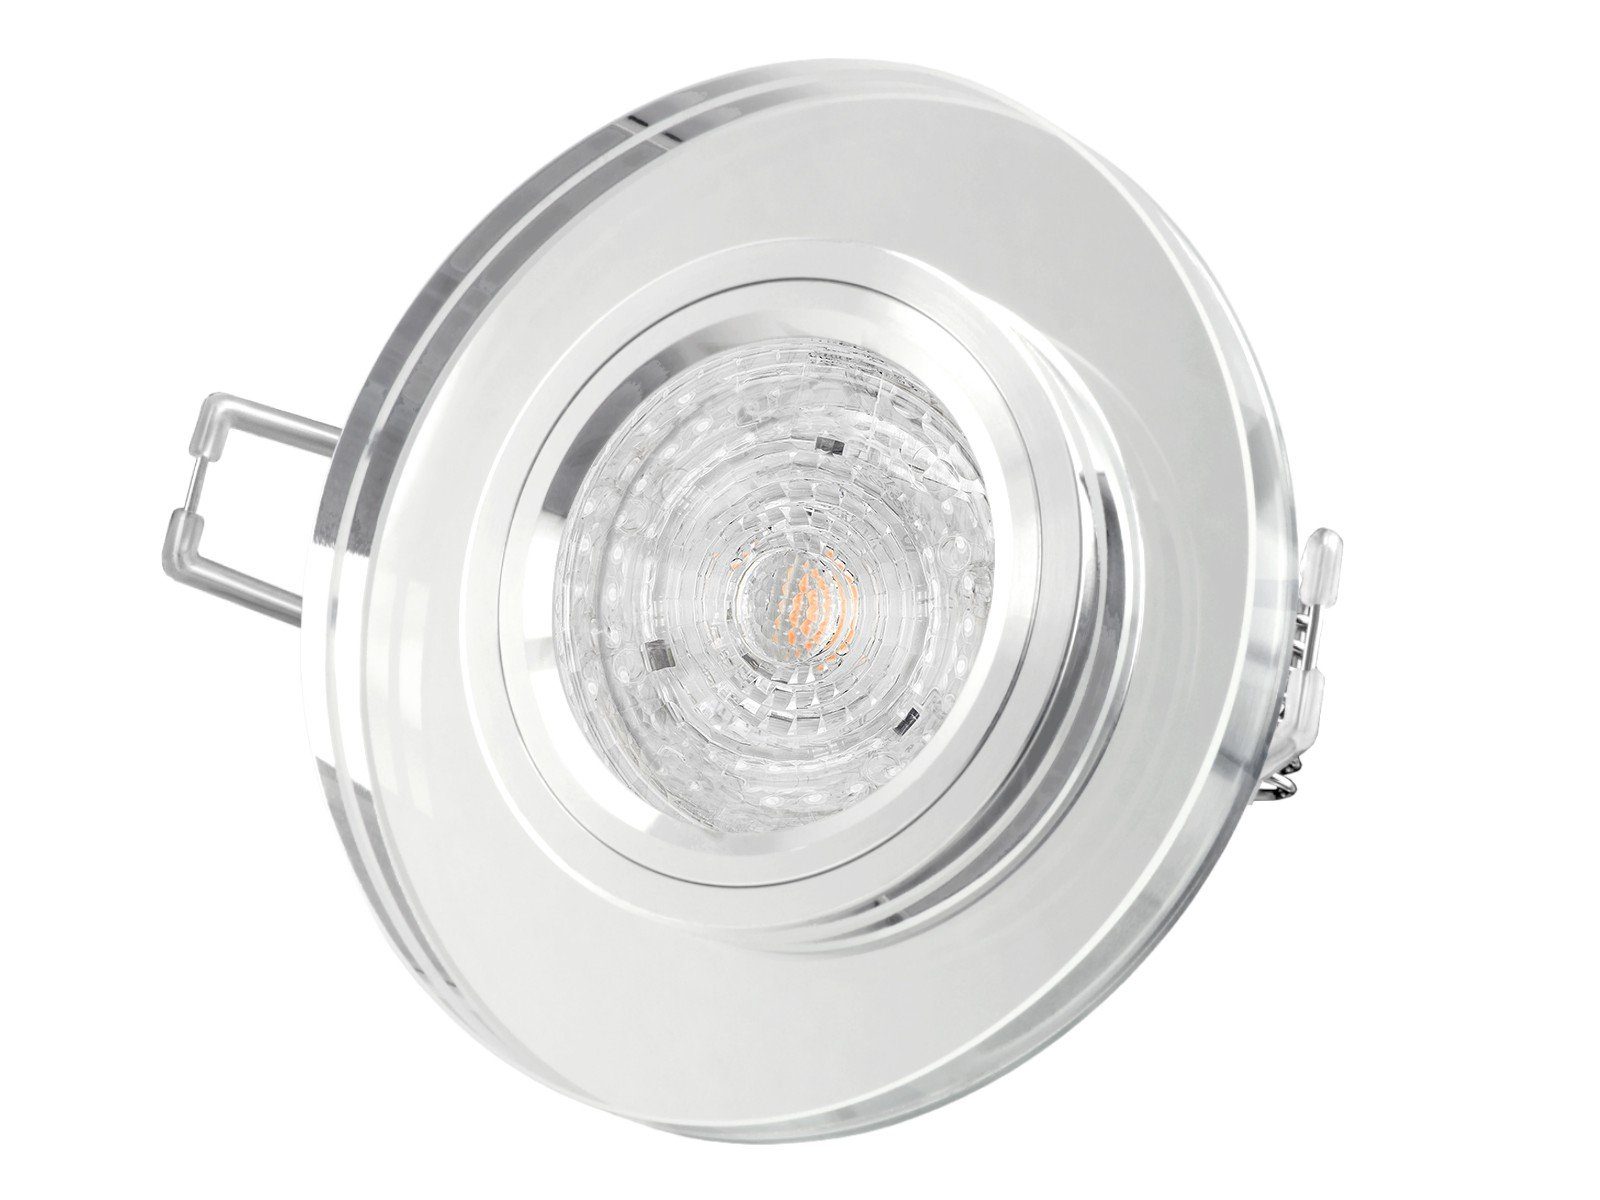 SSC-LUXon LED Einbaustrahler Dimmbarer LED-Einbaustrahler Echtglas rund, klar spiegelnd, 4,9W, Neutralweiß